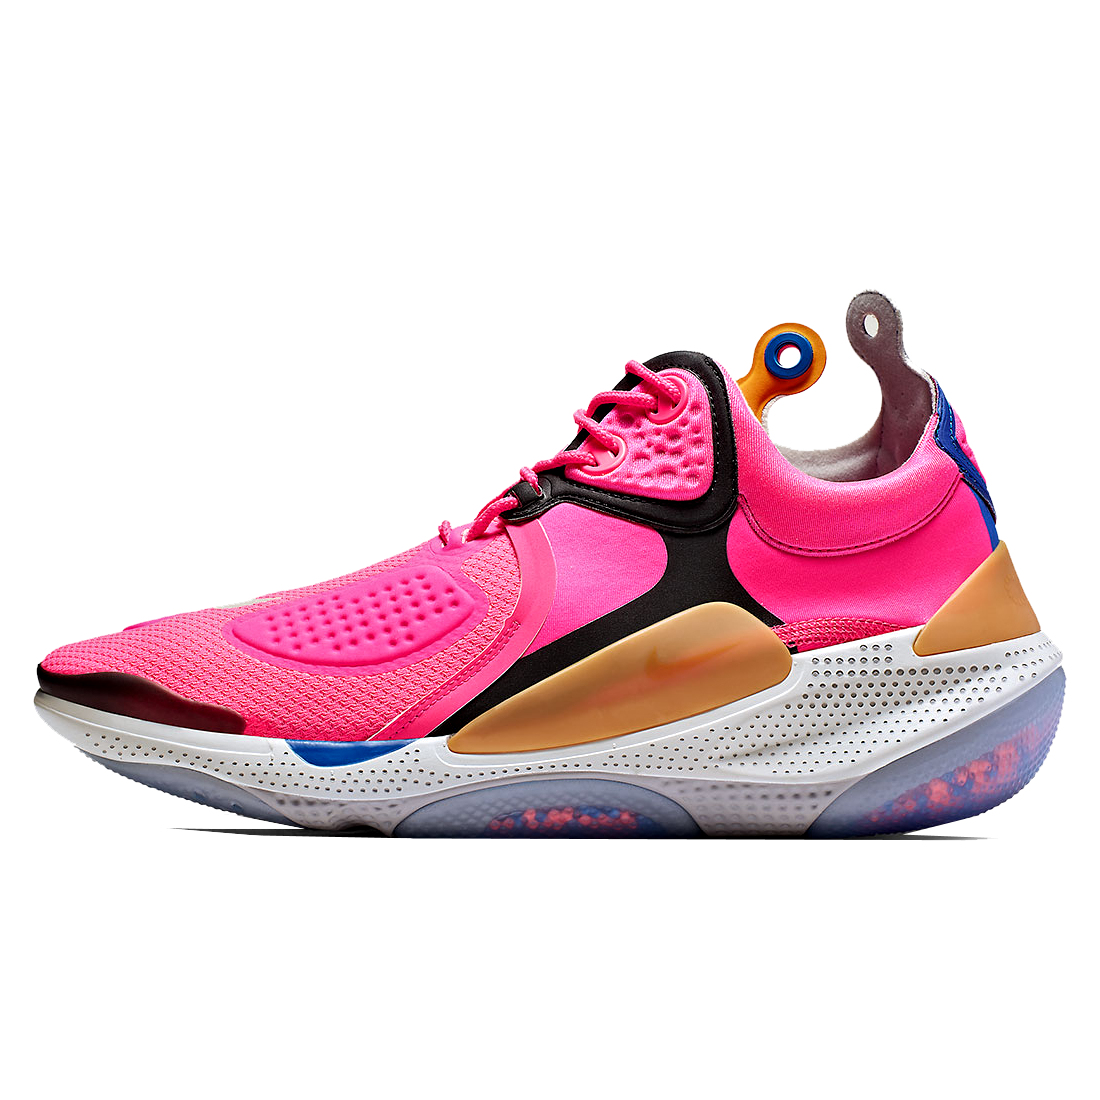 کفش بسکتبال زنانه نایکی مدل Joyride NSW Setter Hyper Pink کد AT6395-600